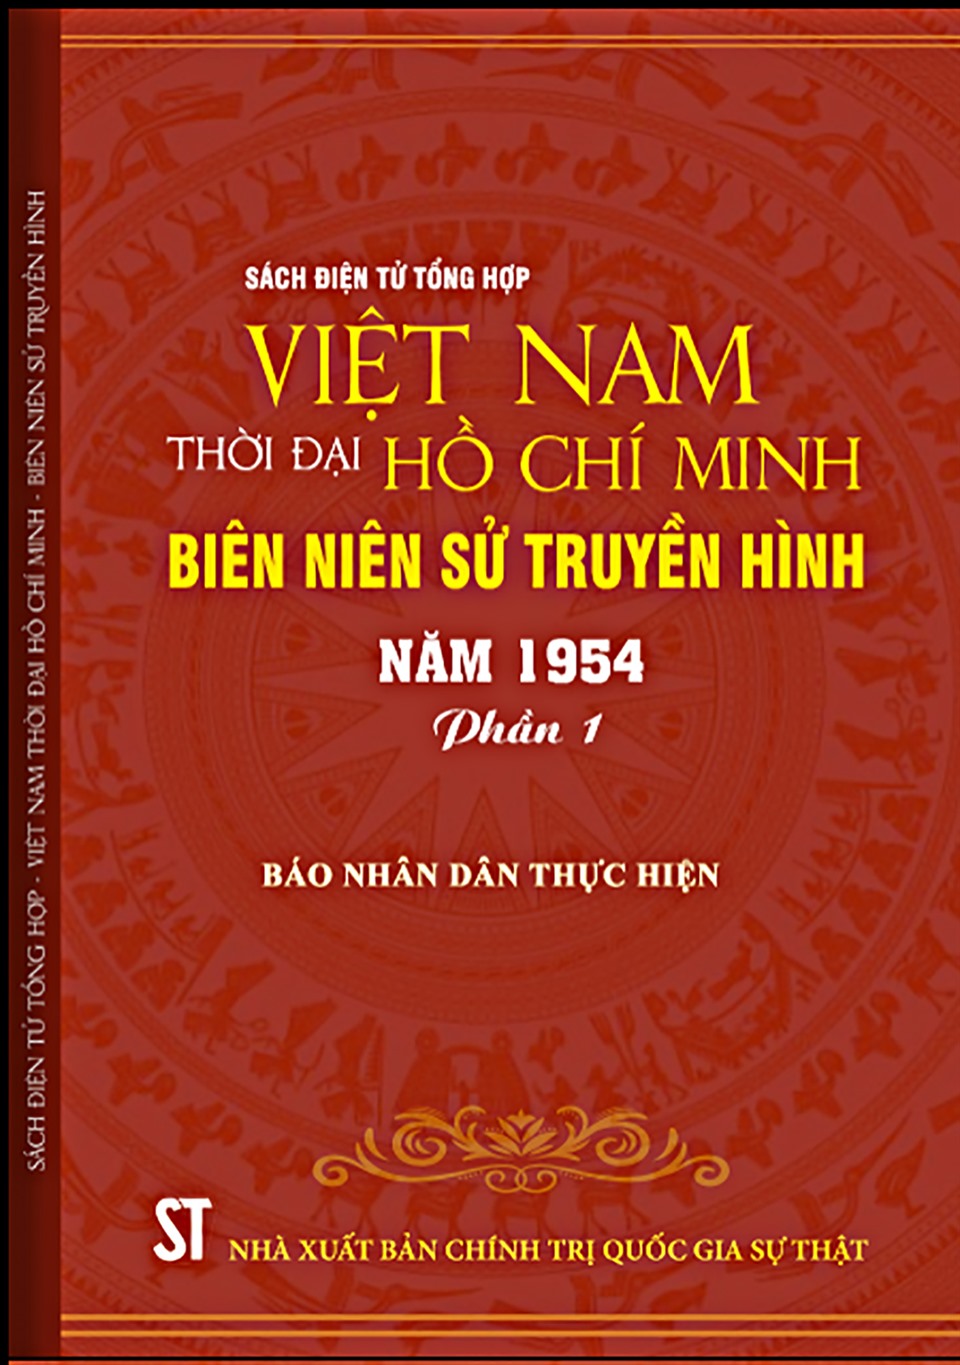 Sách điện tử tổng hợp “Việt Nam Thời đại Hồ Chí Minh - biên niên sử truyền hình”.